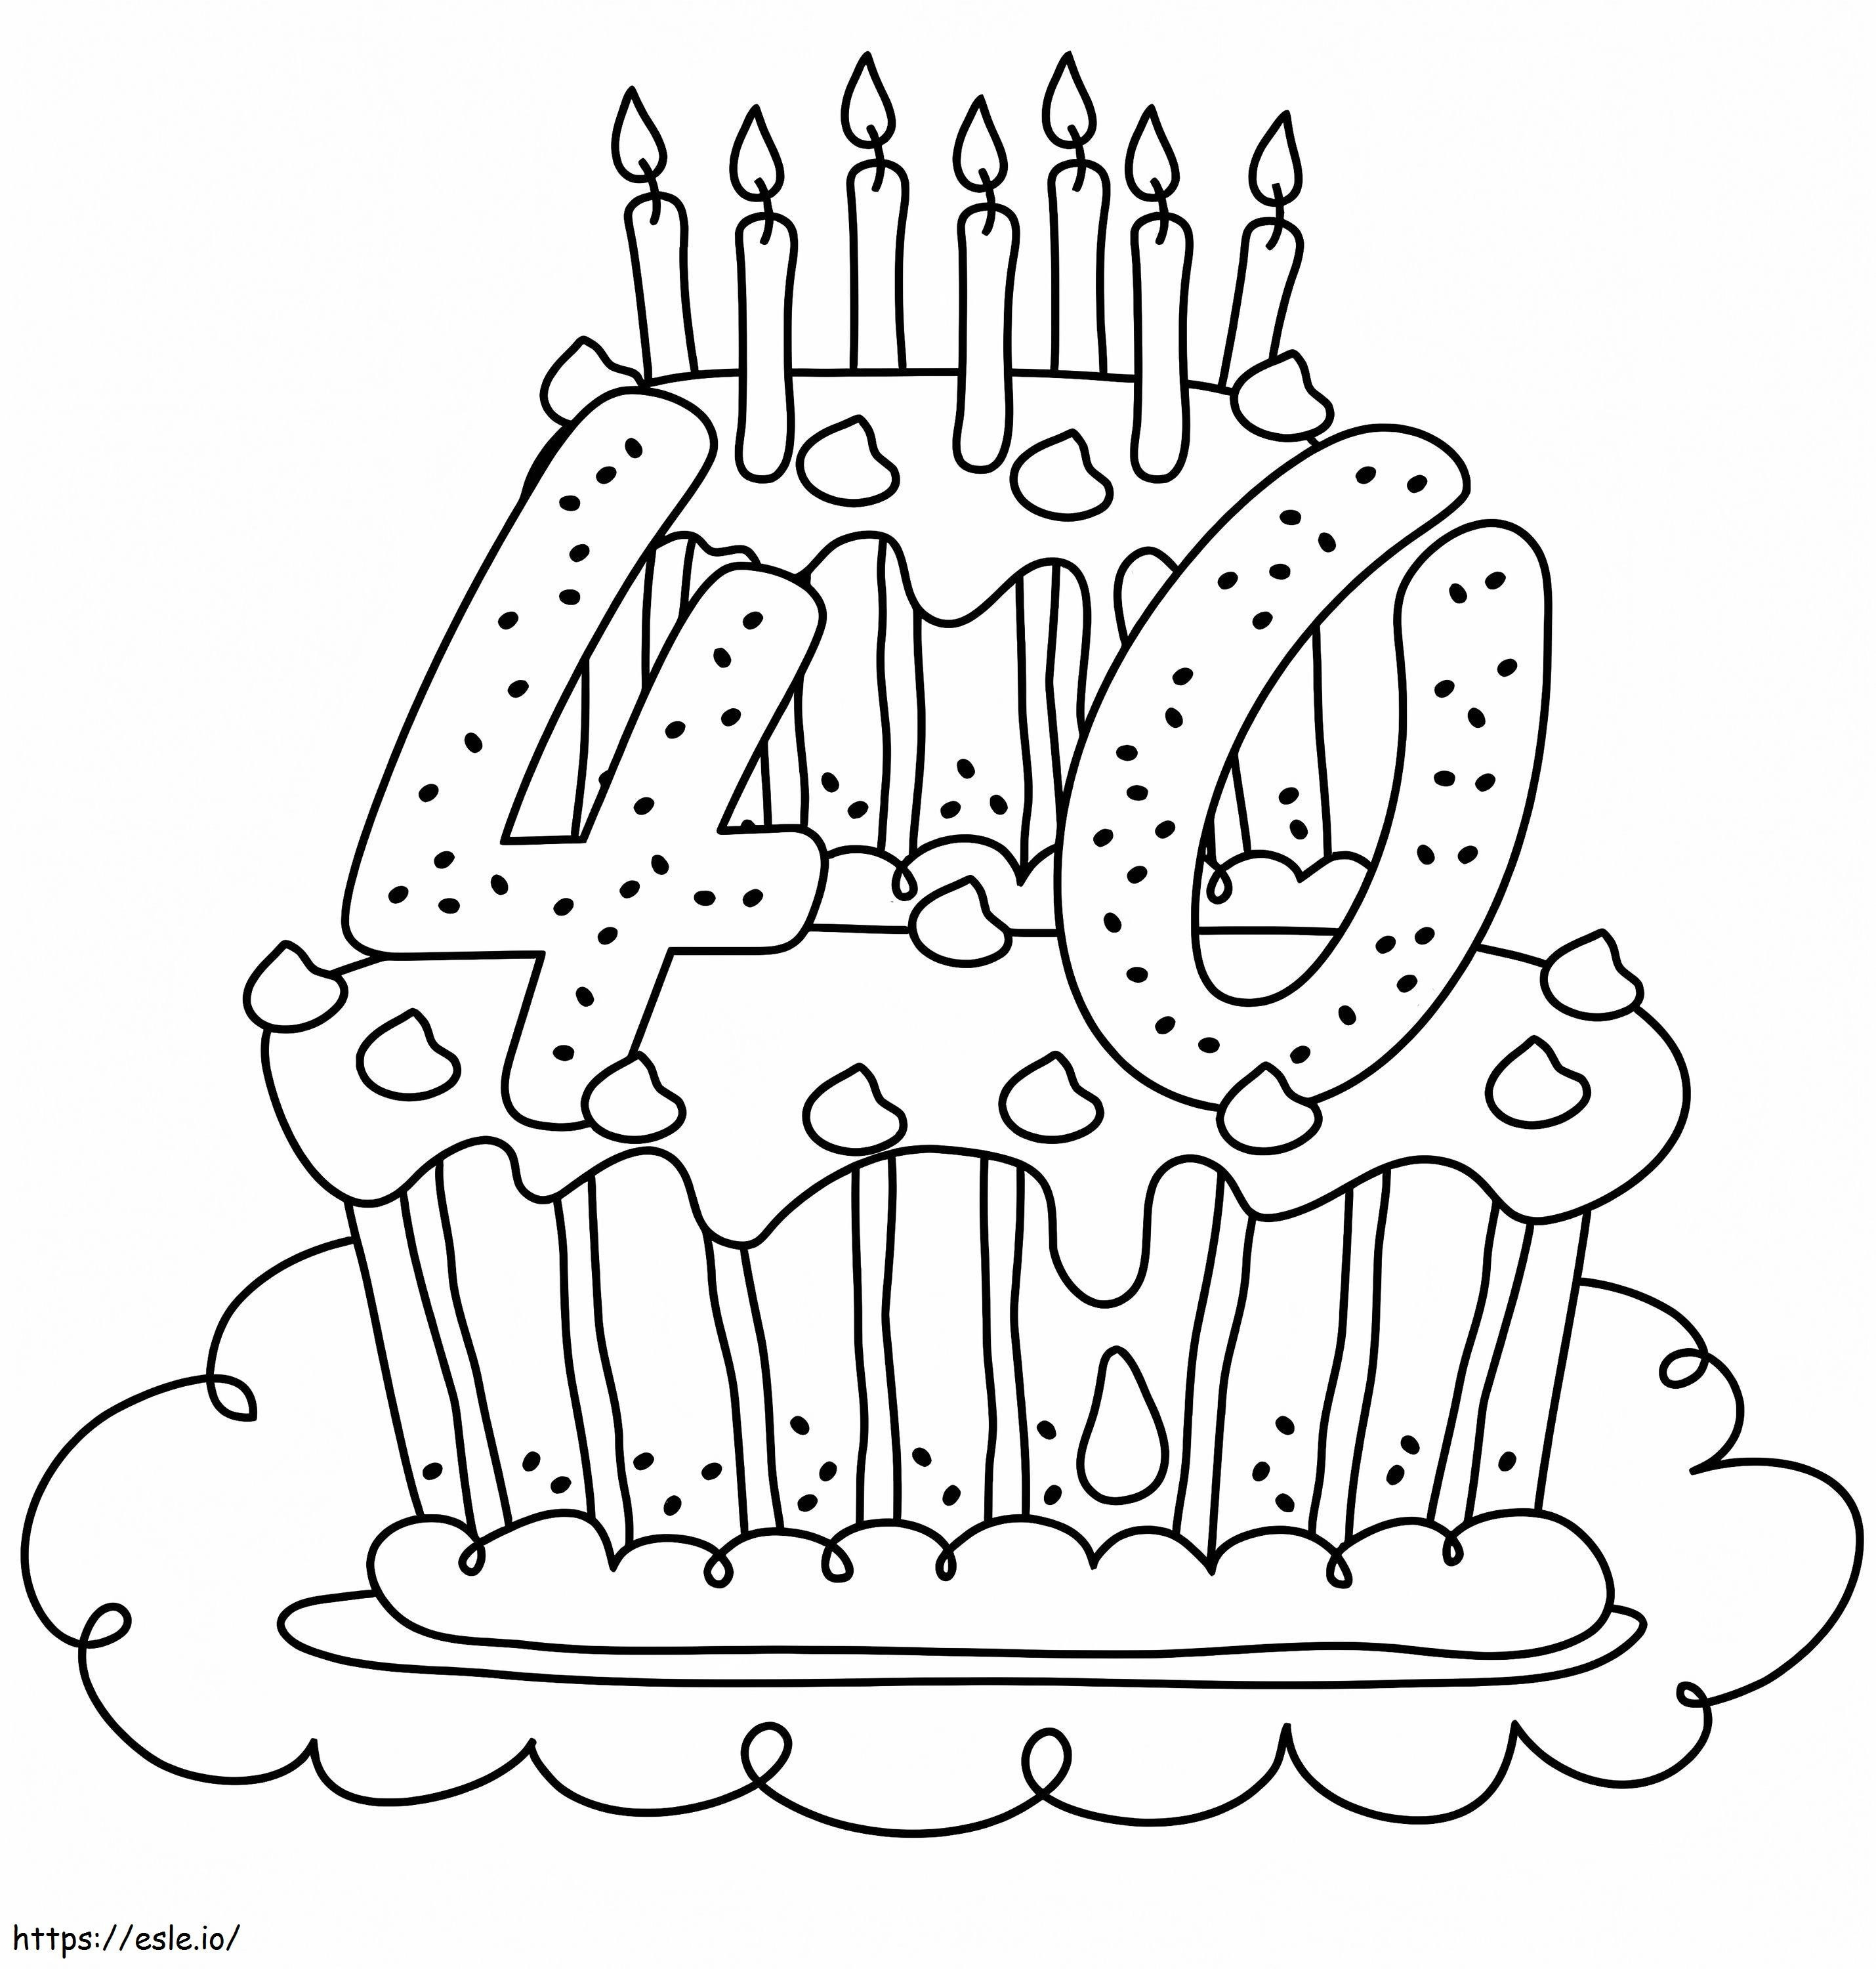 Coloriage Gâteau d'anniversaire  ans à imprimer dessin